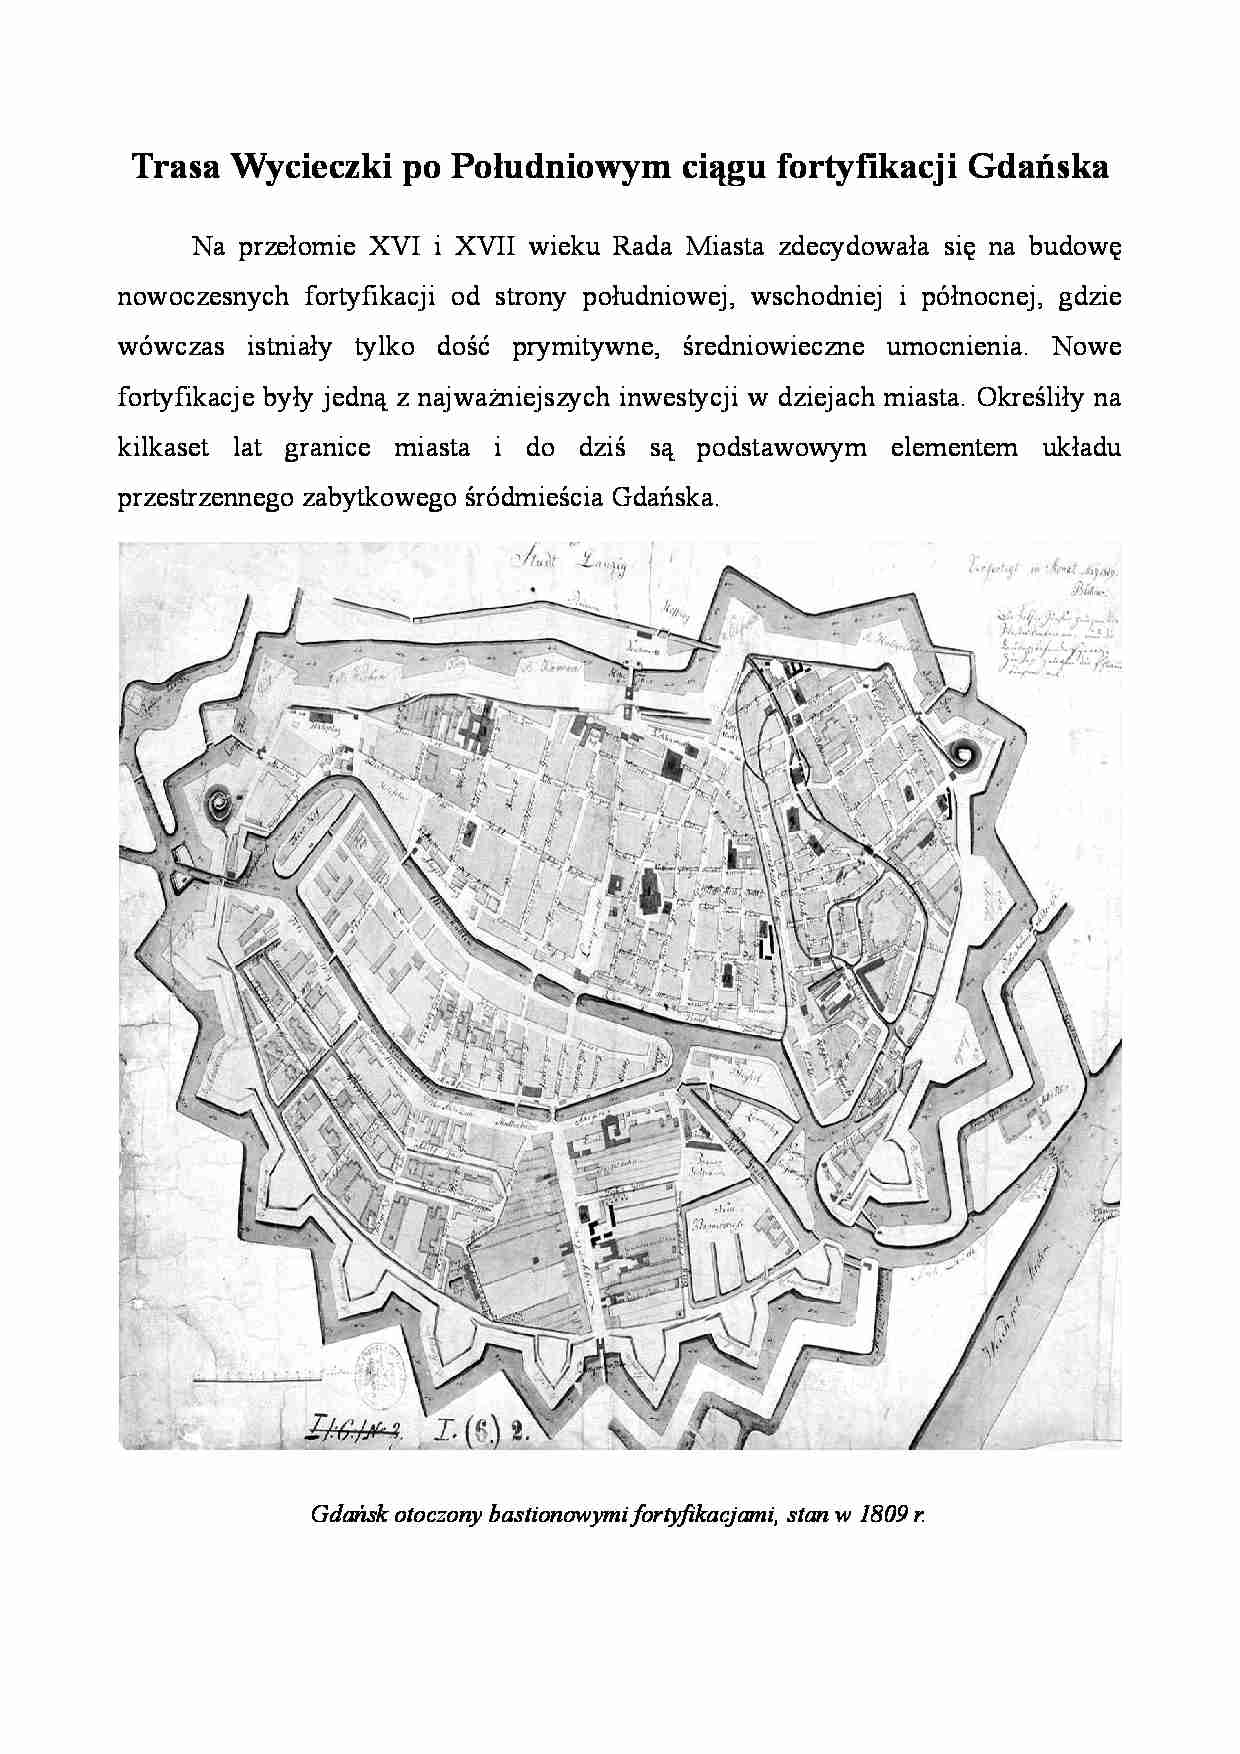 Trasa Wycieczki po Południowym ciągu fortyfikacji Gdańska - strona 1